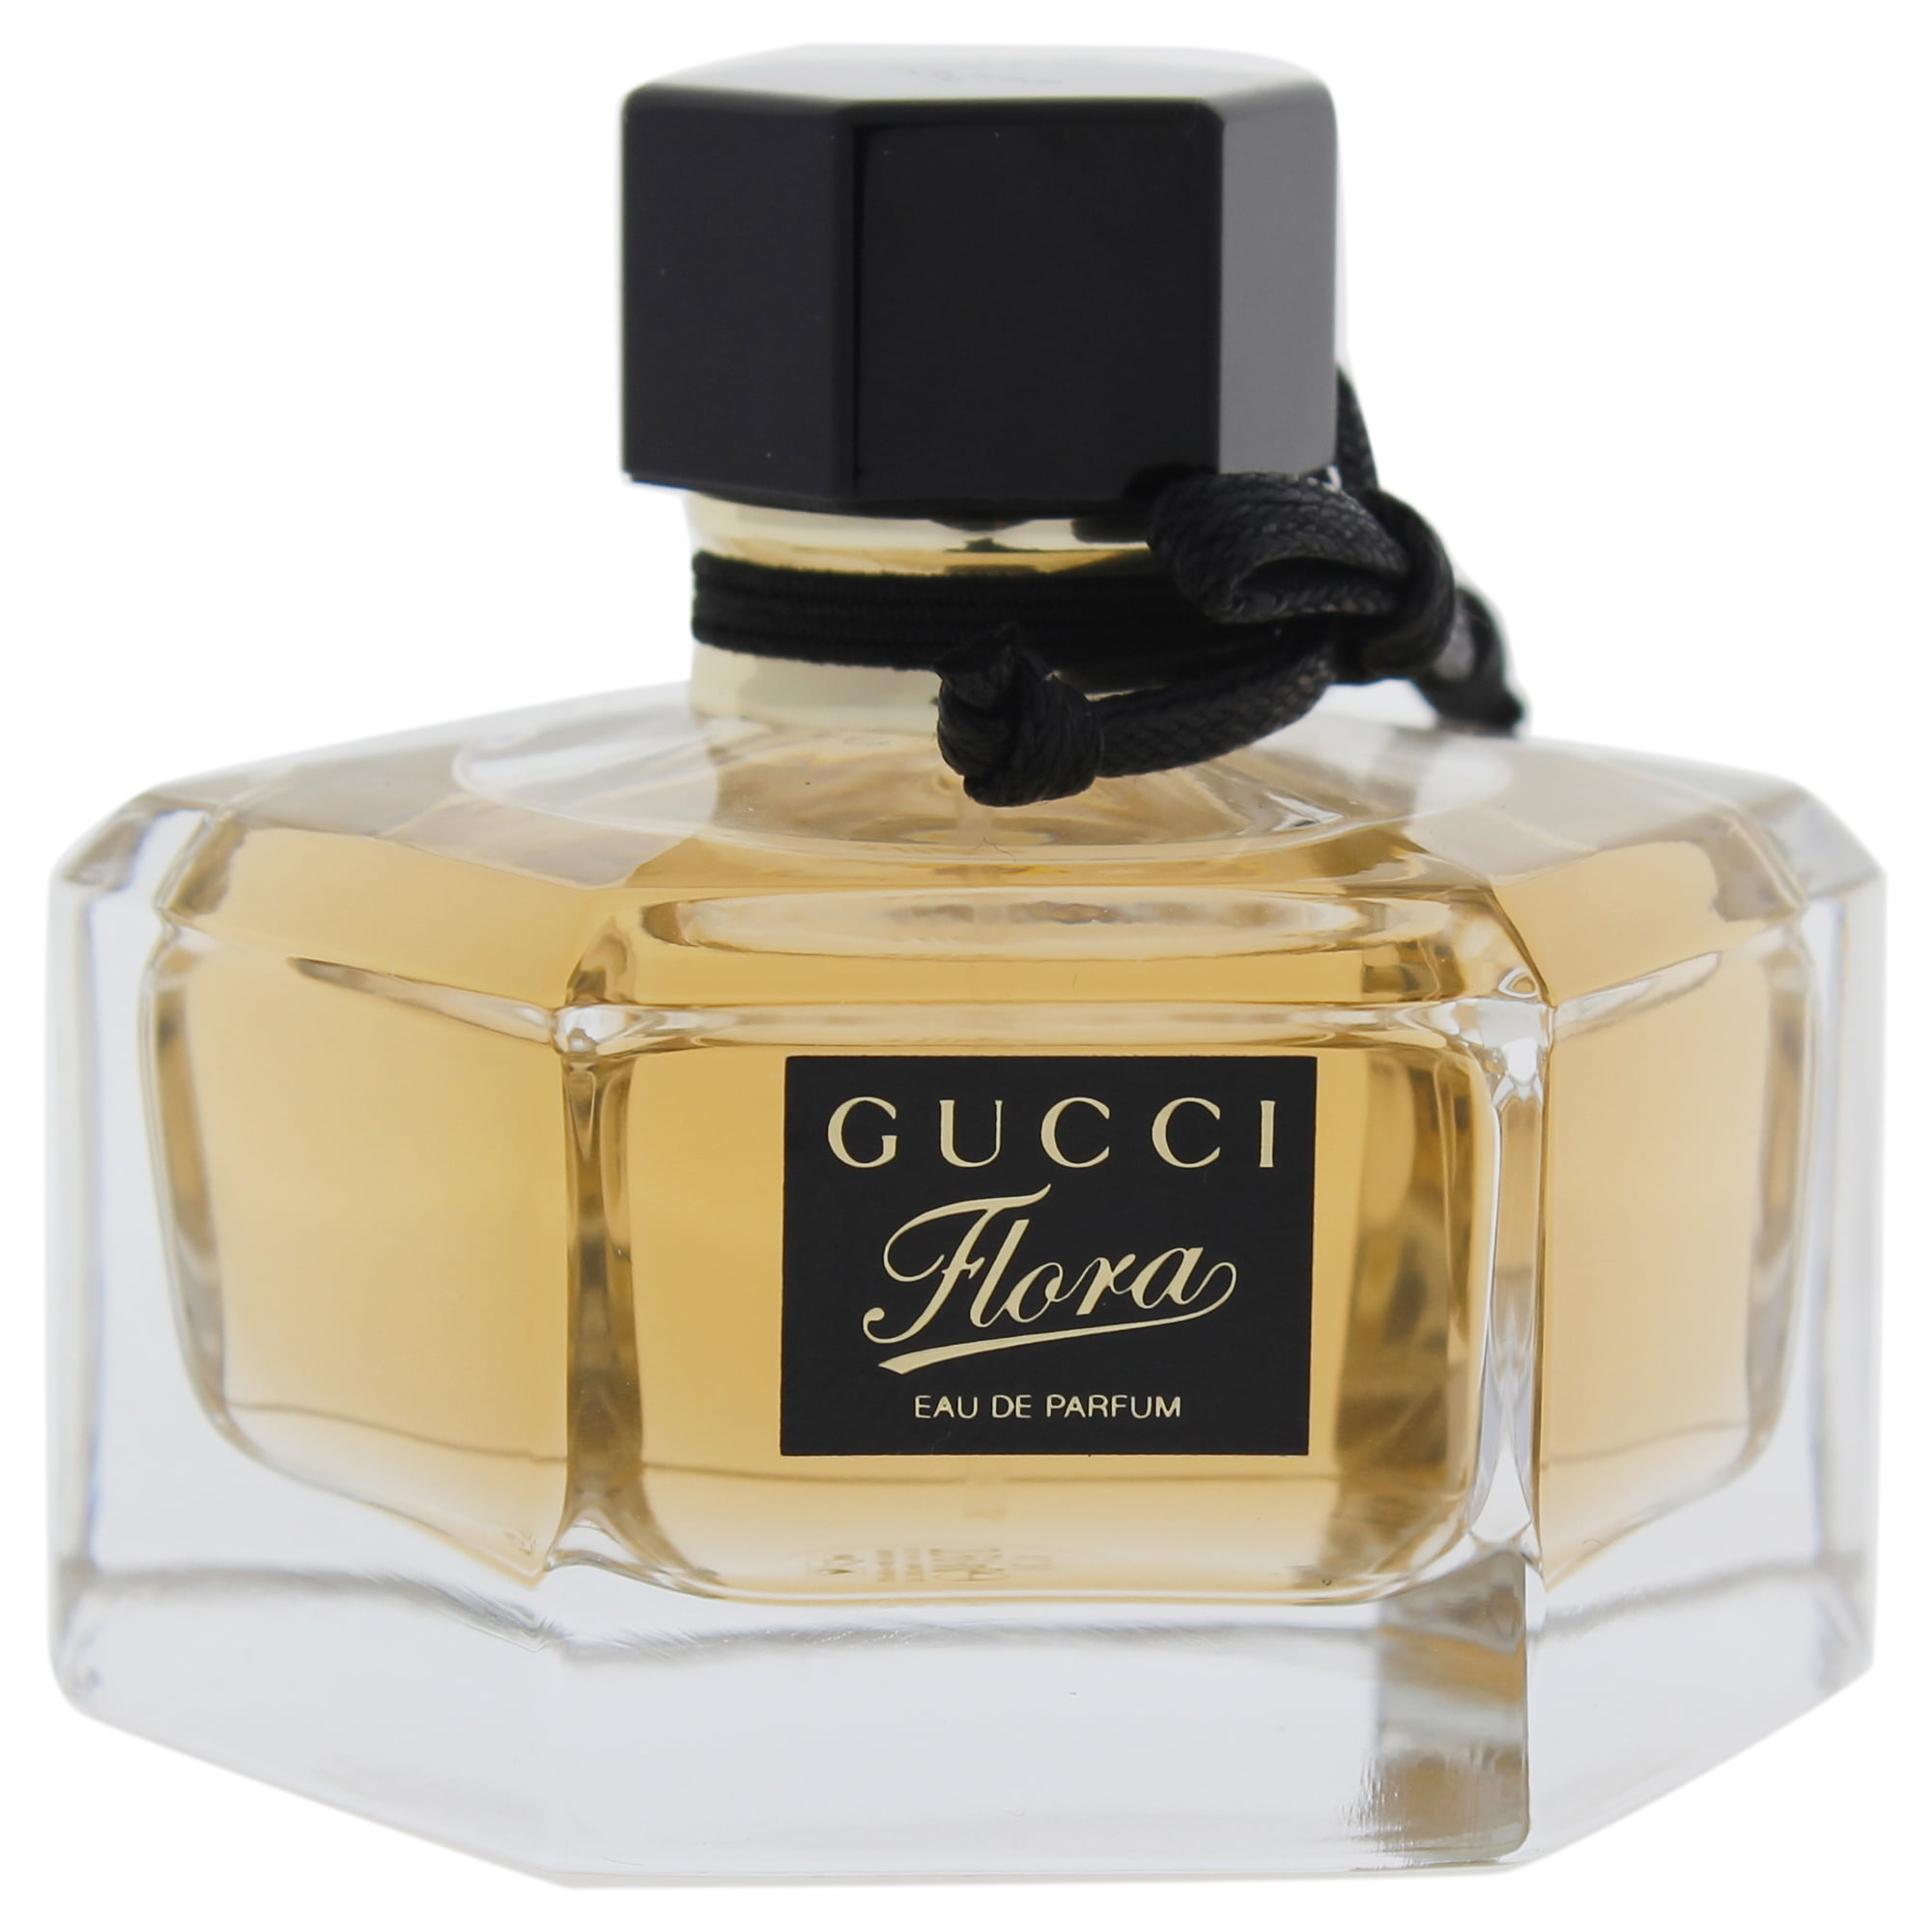 Gucci flora eau de. Gucci Flora Eau de Toilette. Flora by Gucci Eau de Parfum. Gucci Flora by Gucci Eau de Parfum. Gucci Flora by Gucci Eau de Parfum, 75 ml.